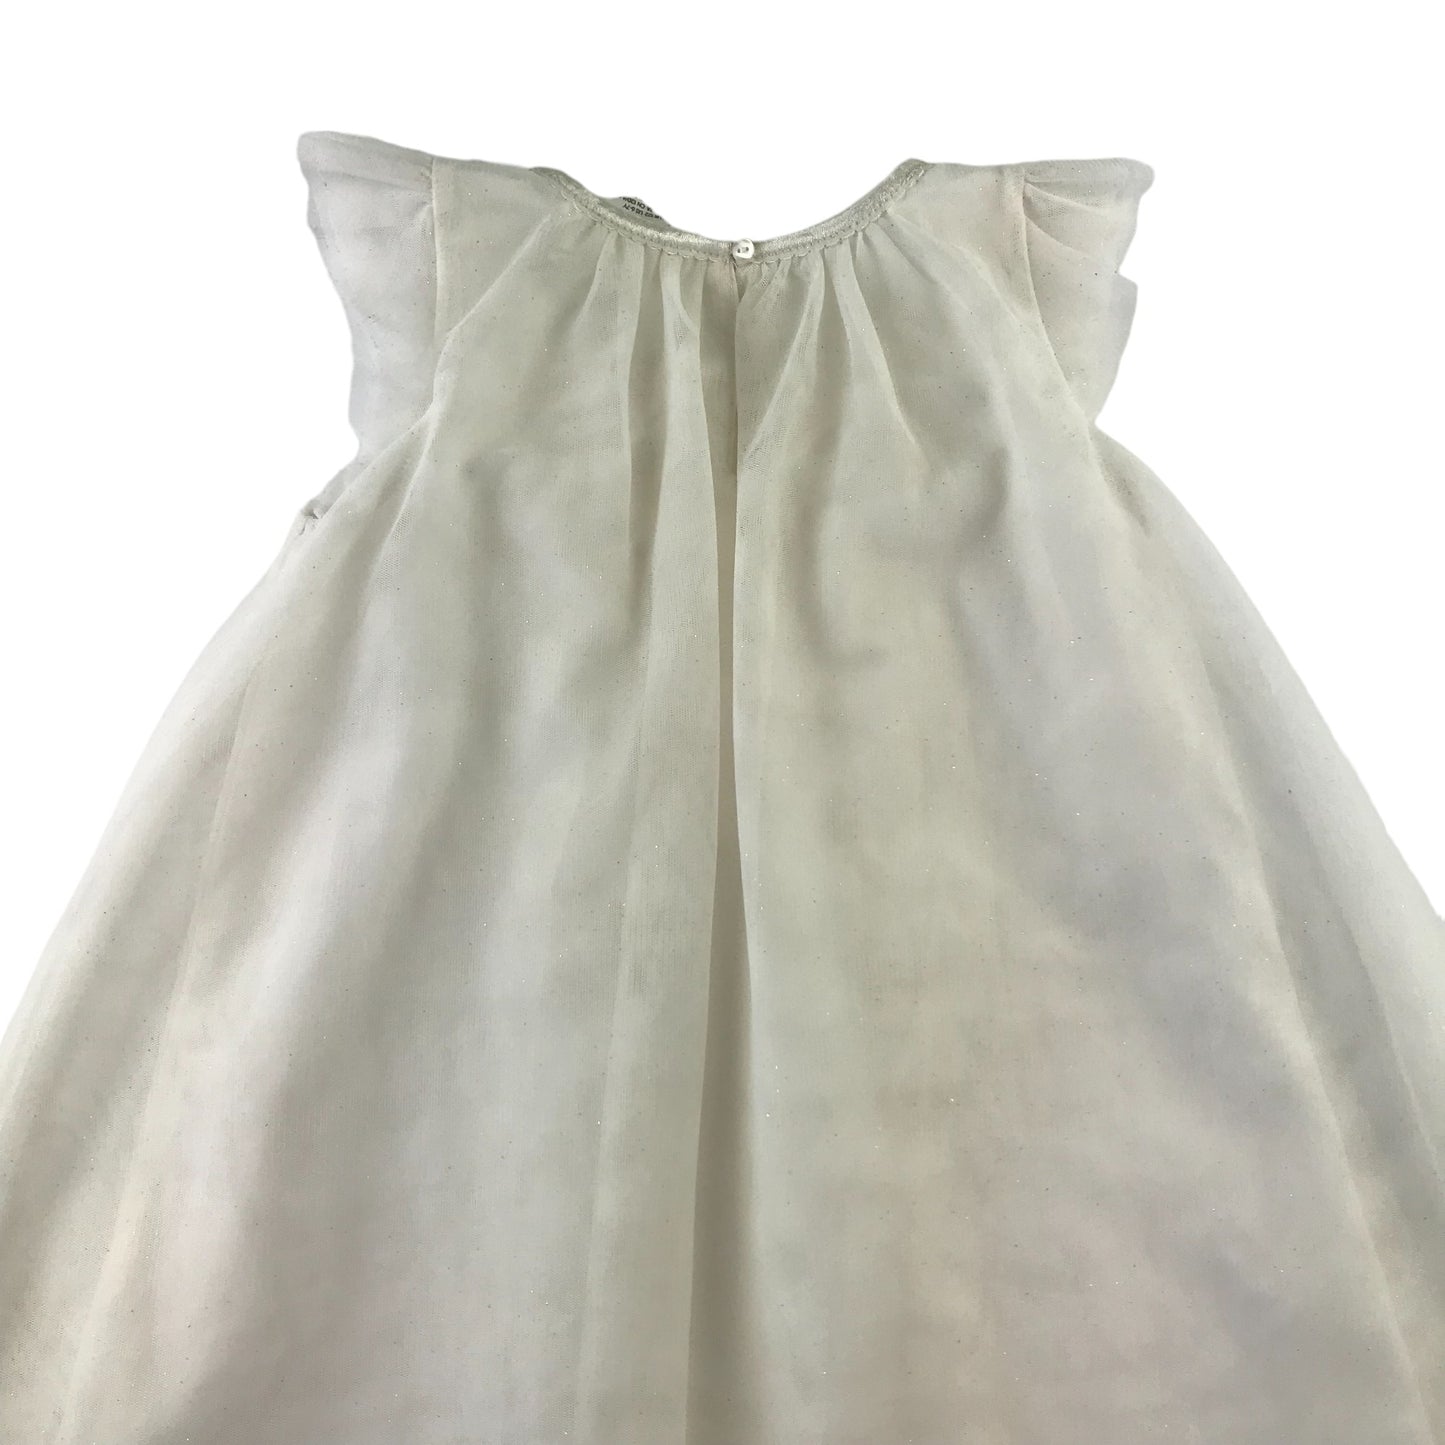 H&M dress 6-7 years white A-line mesh overlay sleeveless